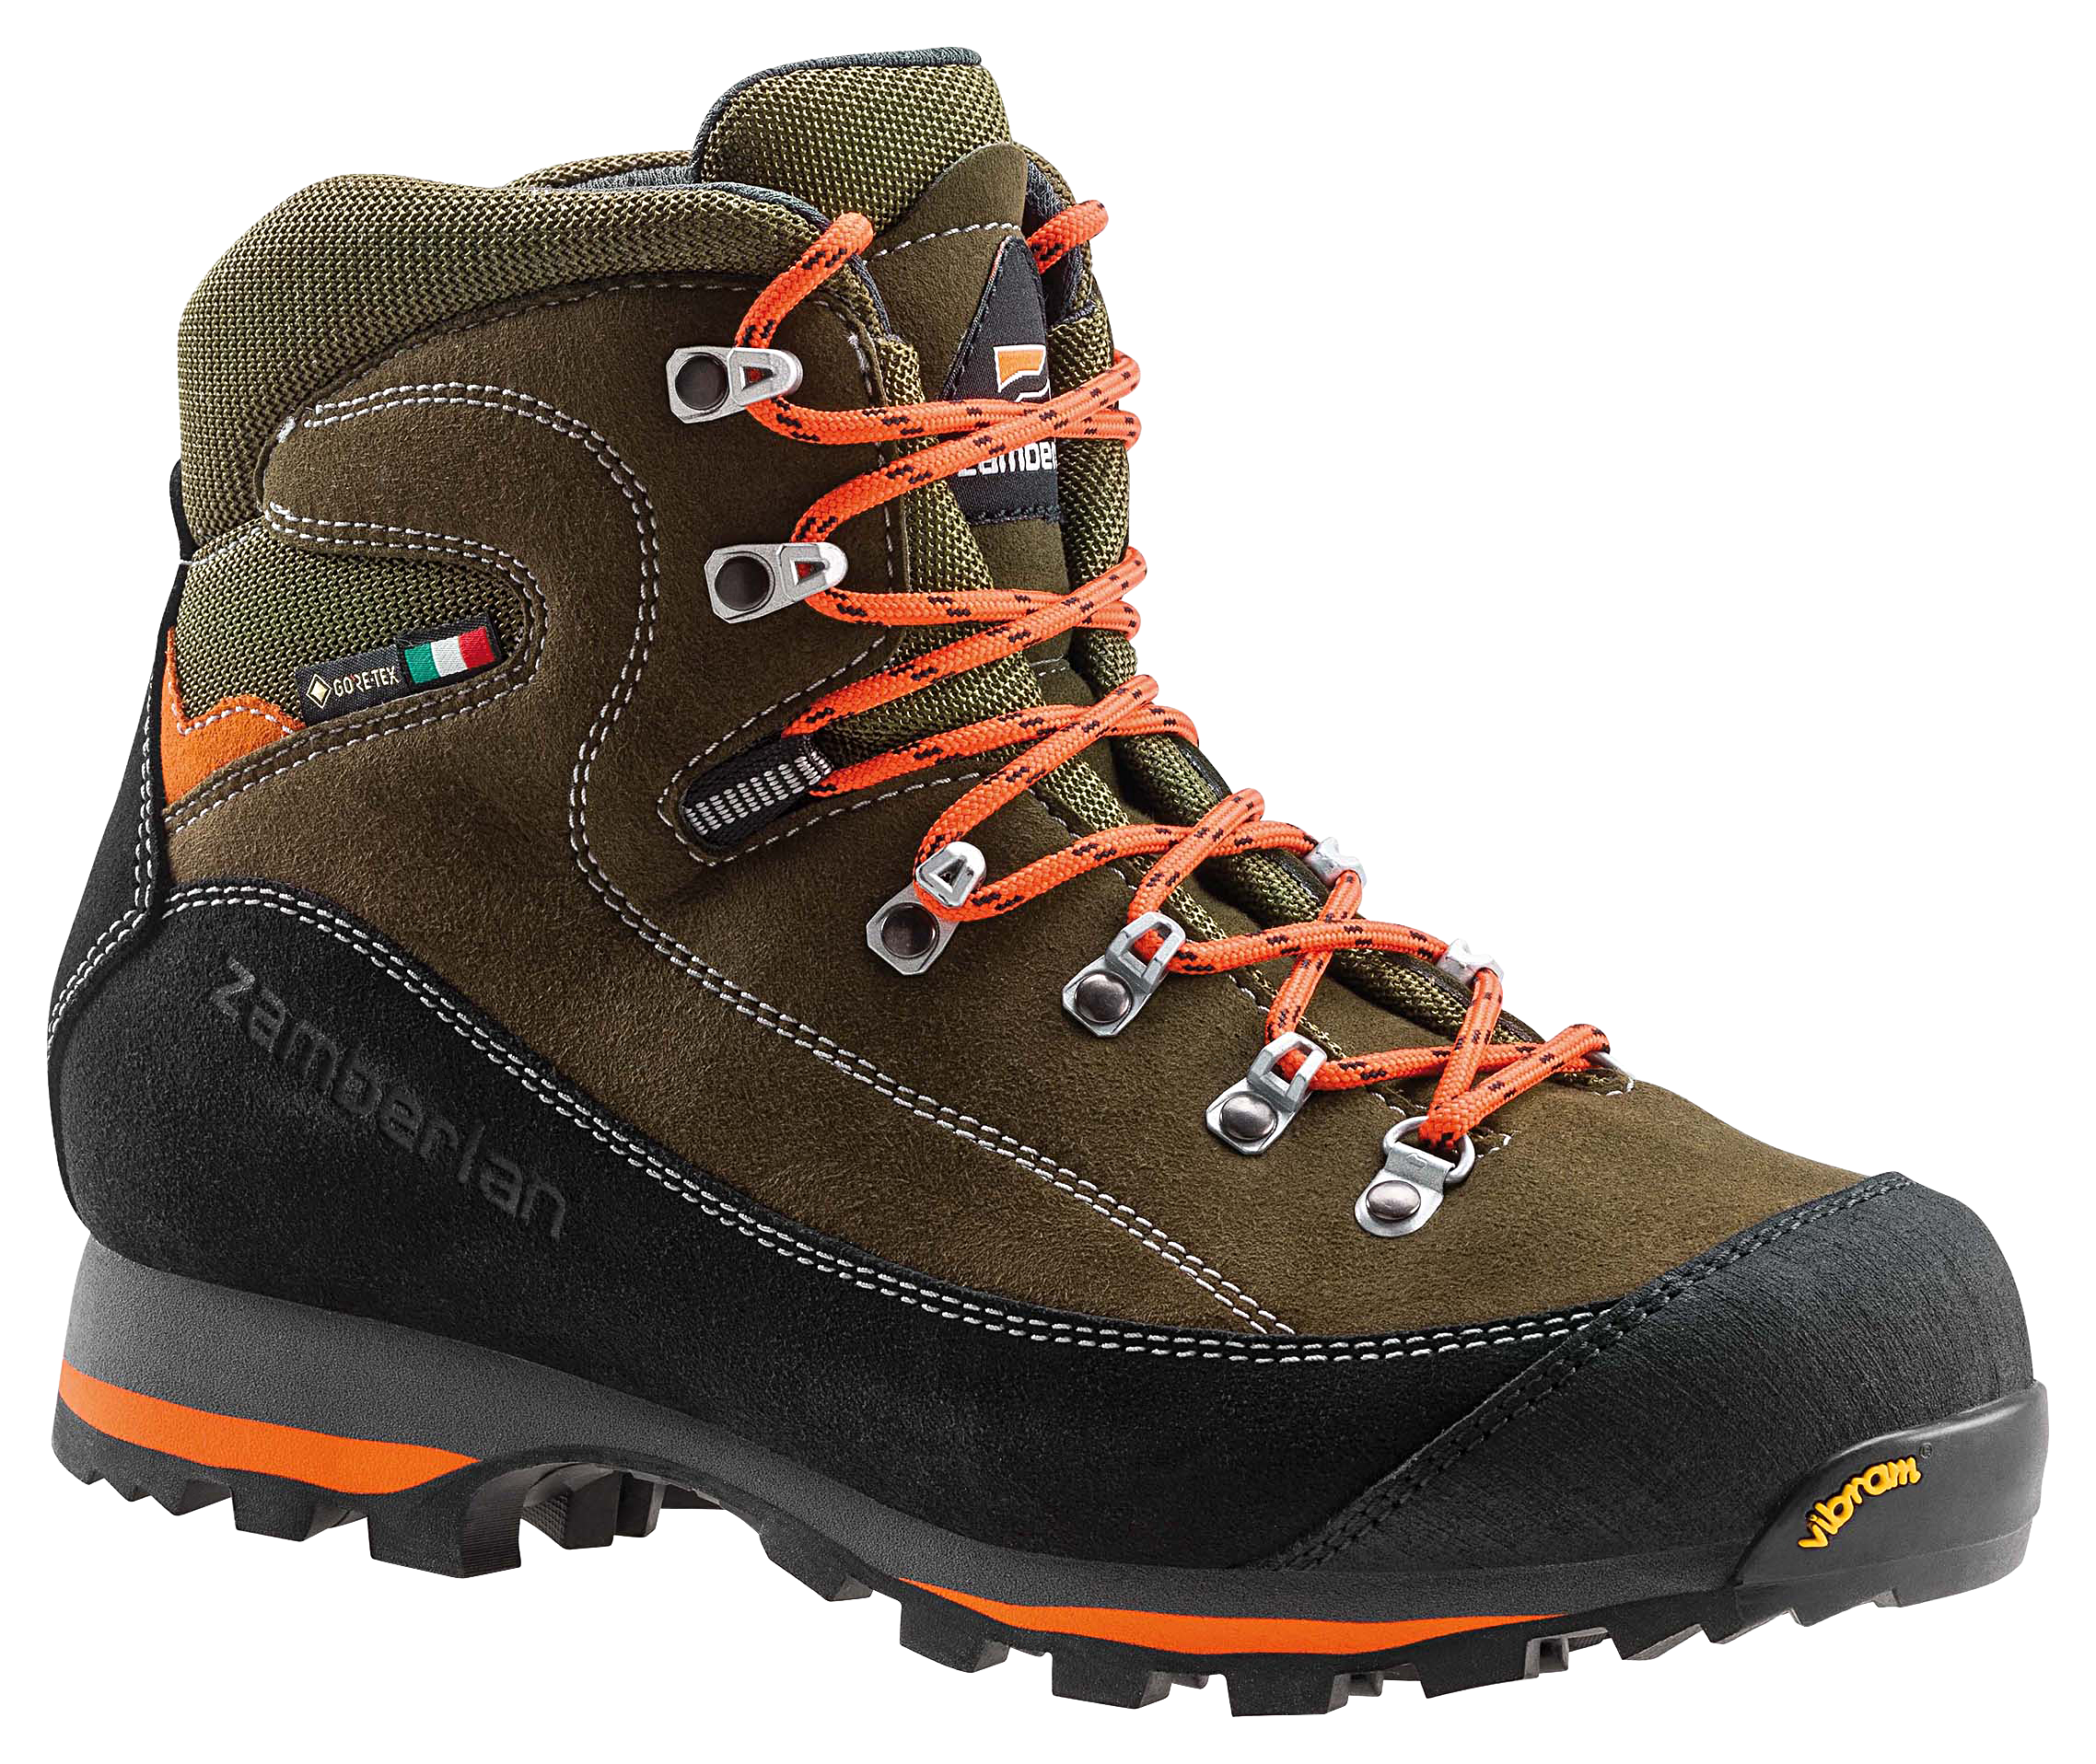 Zamberlan 700 Sierra GTX Waterproof Hunting Boots for Men - Forest - 9M